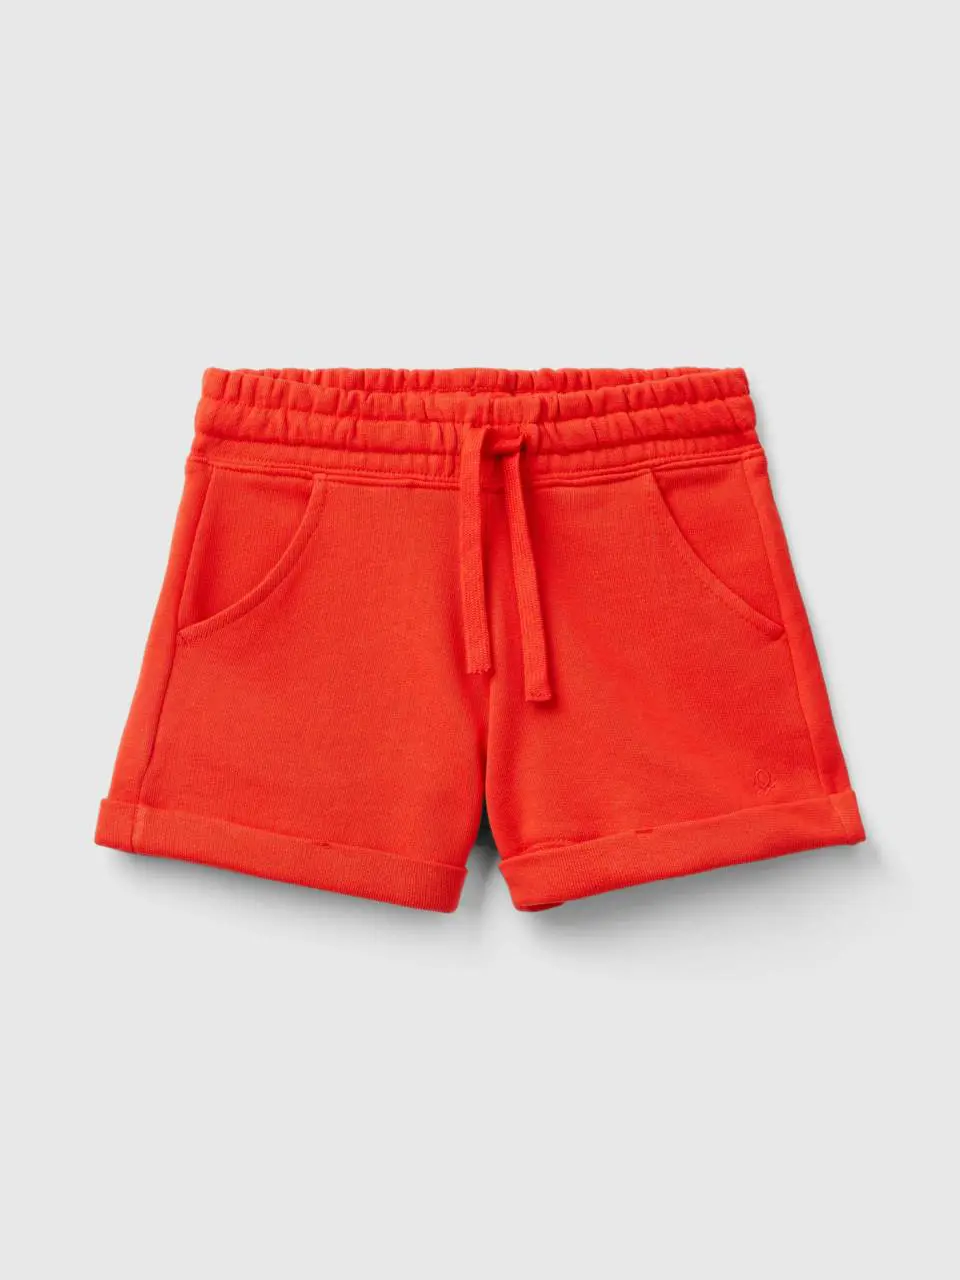 Benetton 100% cotton sweat shorts. 1